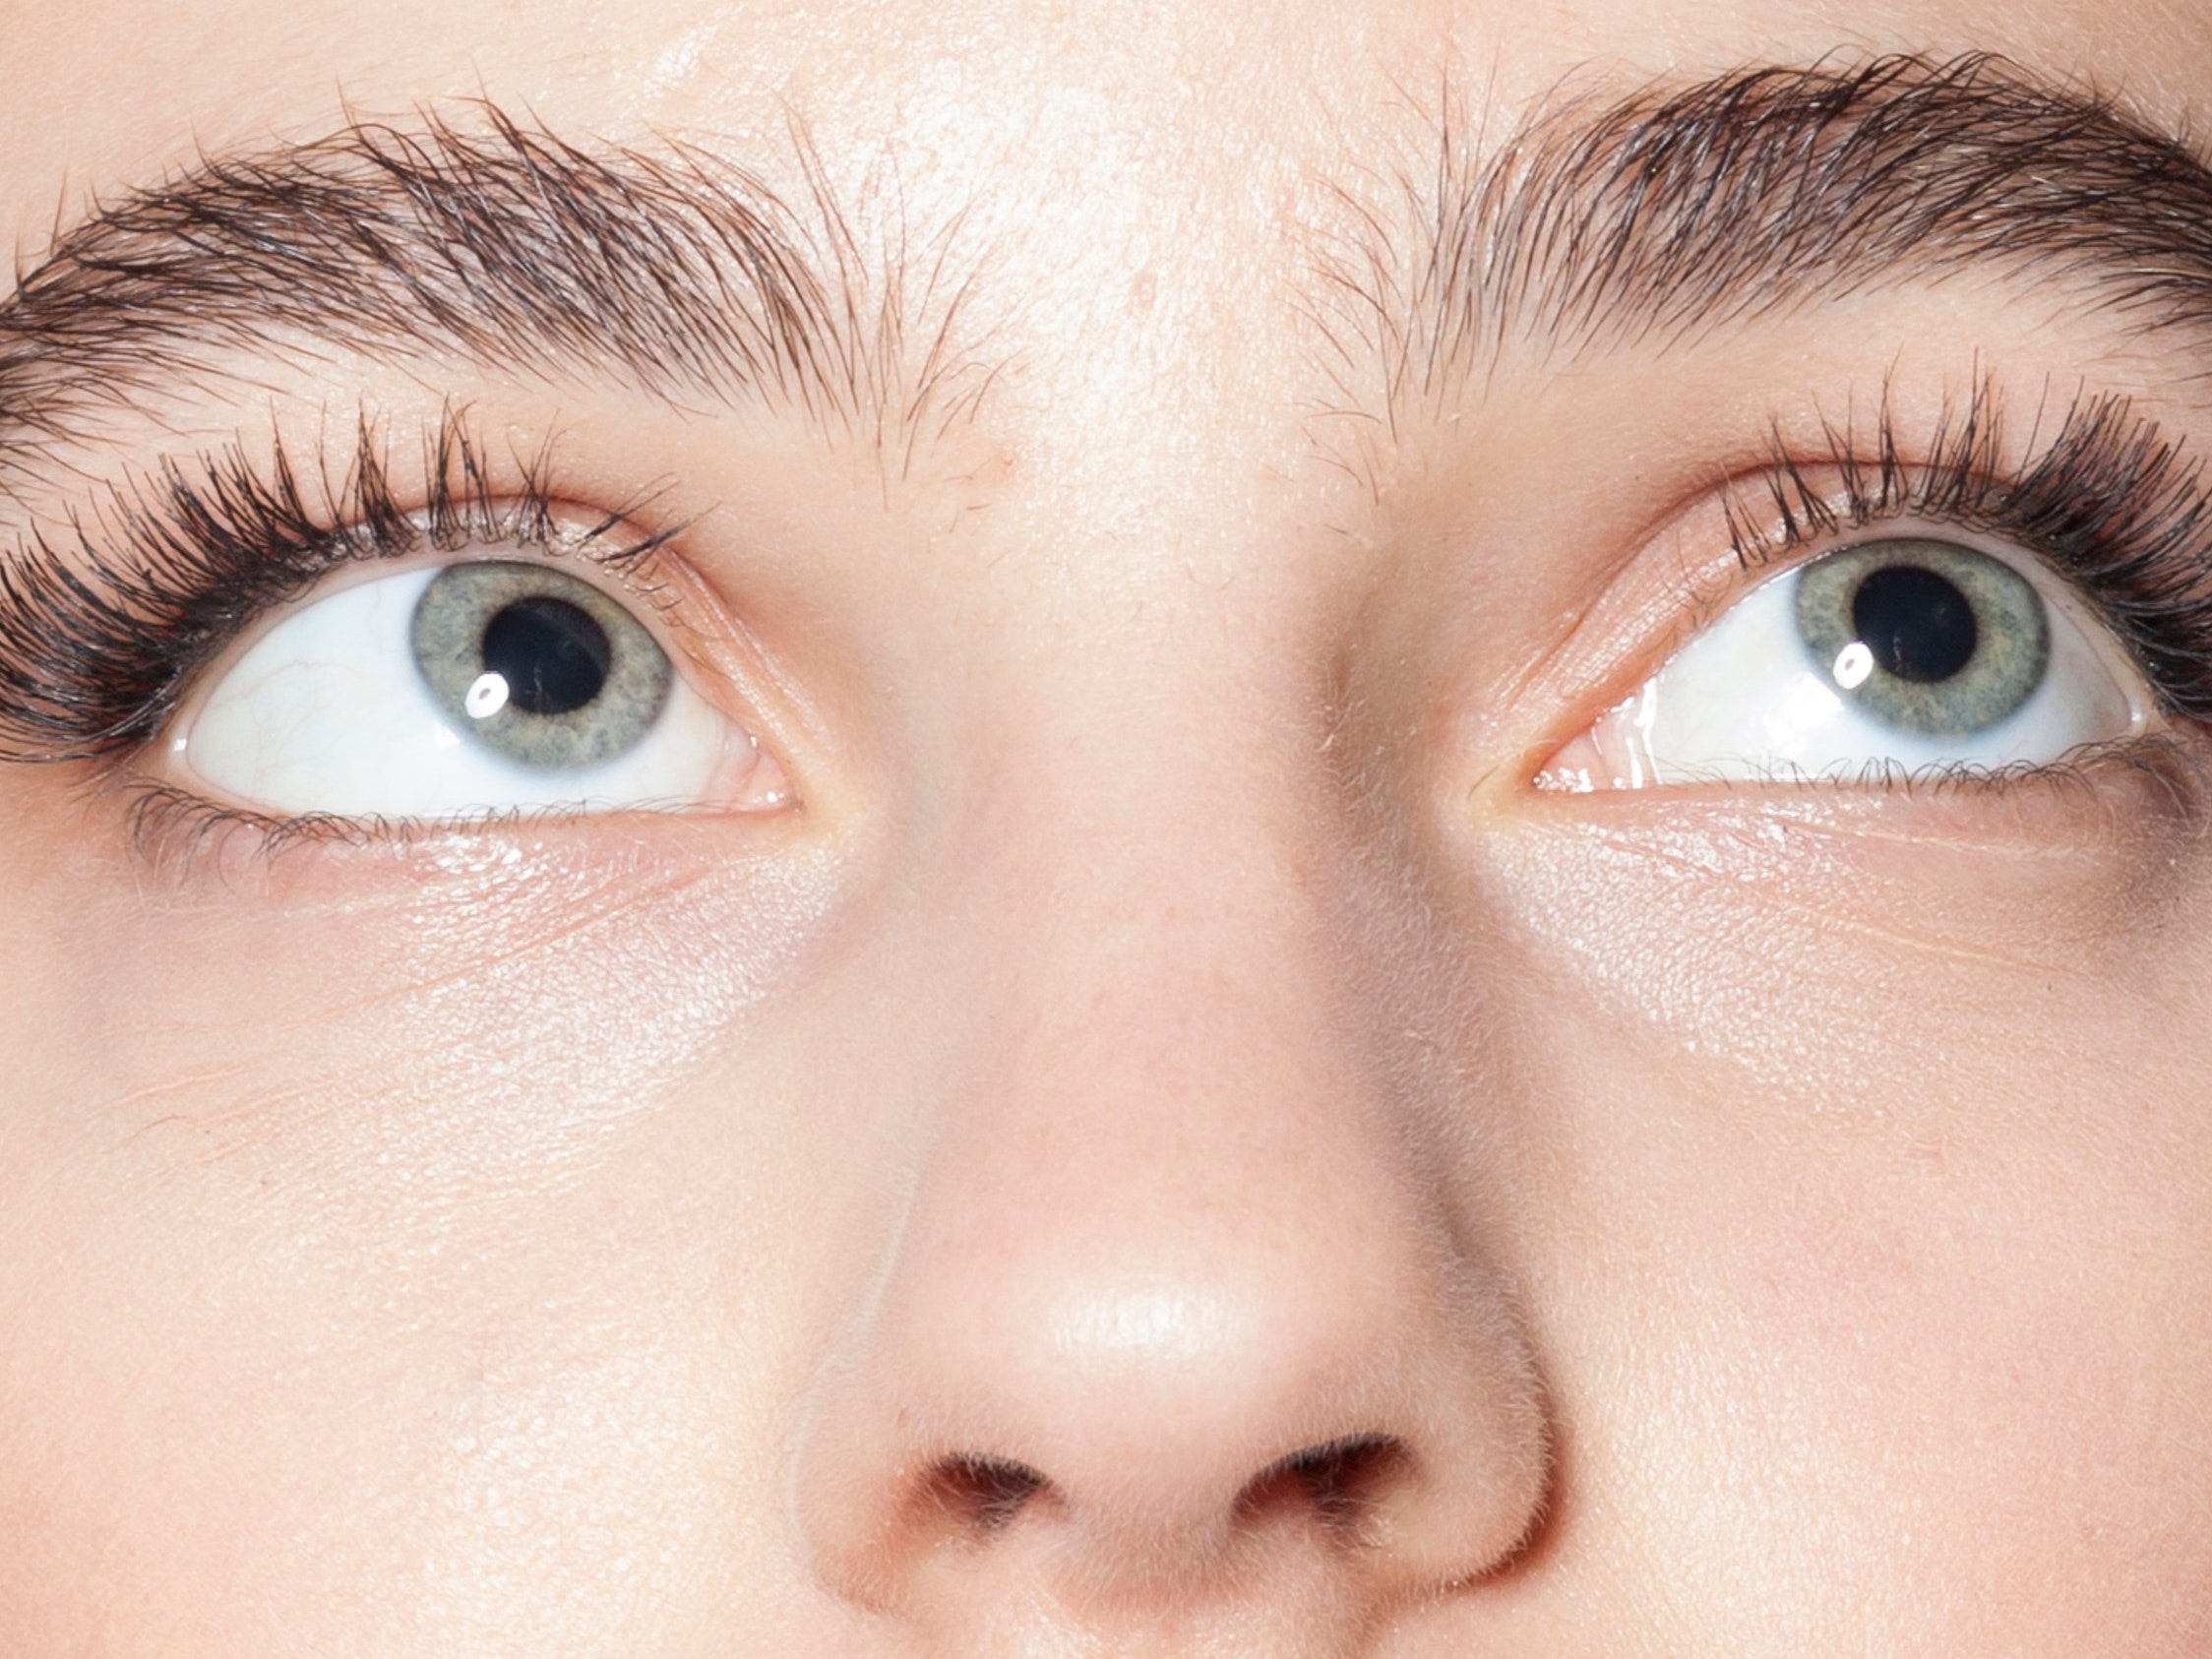 The Risks of Wearing False Eyelashes